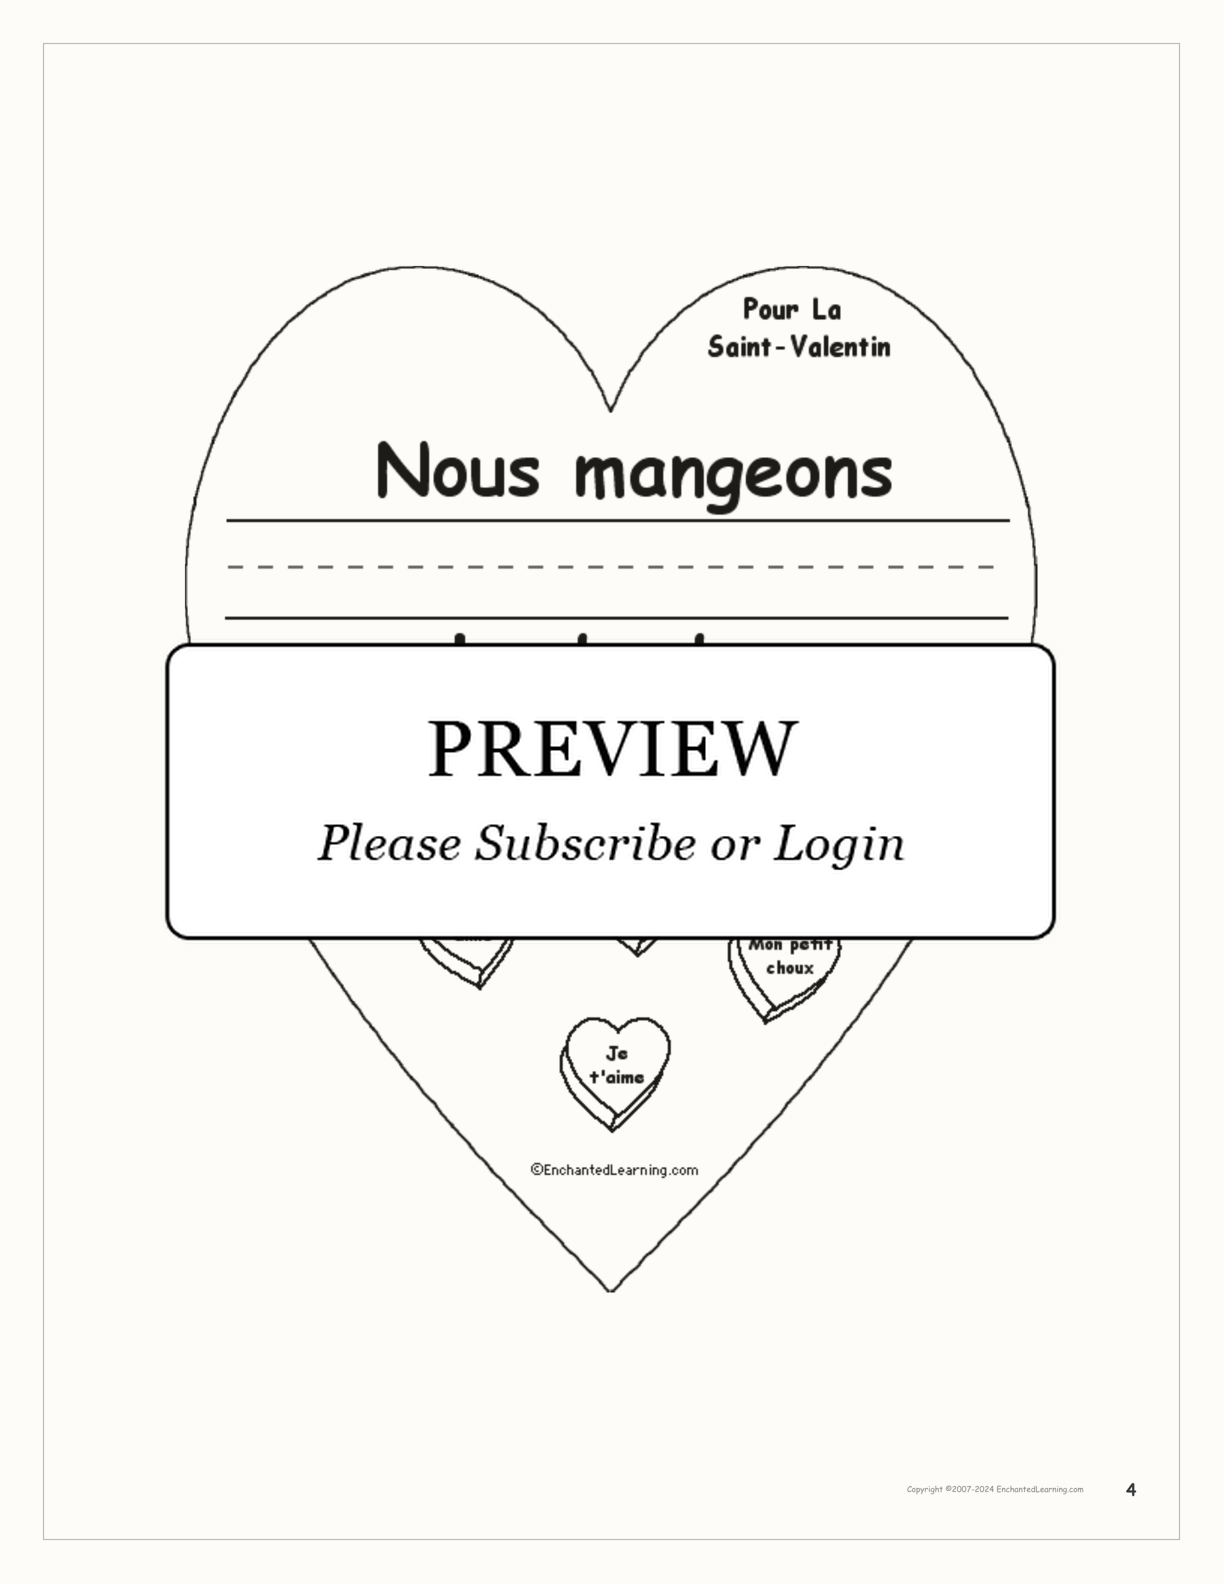 Pour la Saint-Valentin interactive worksheet page 4